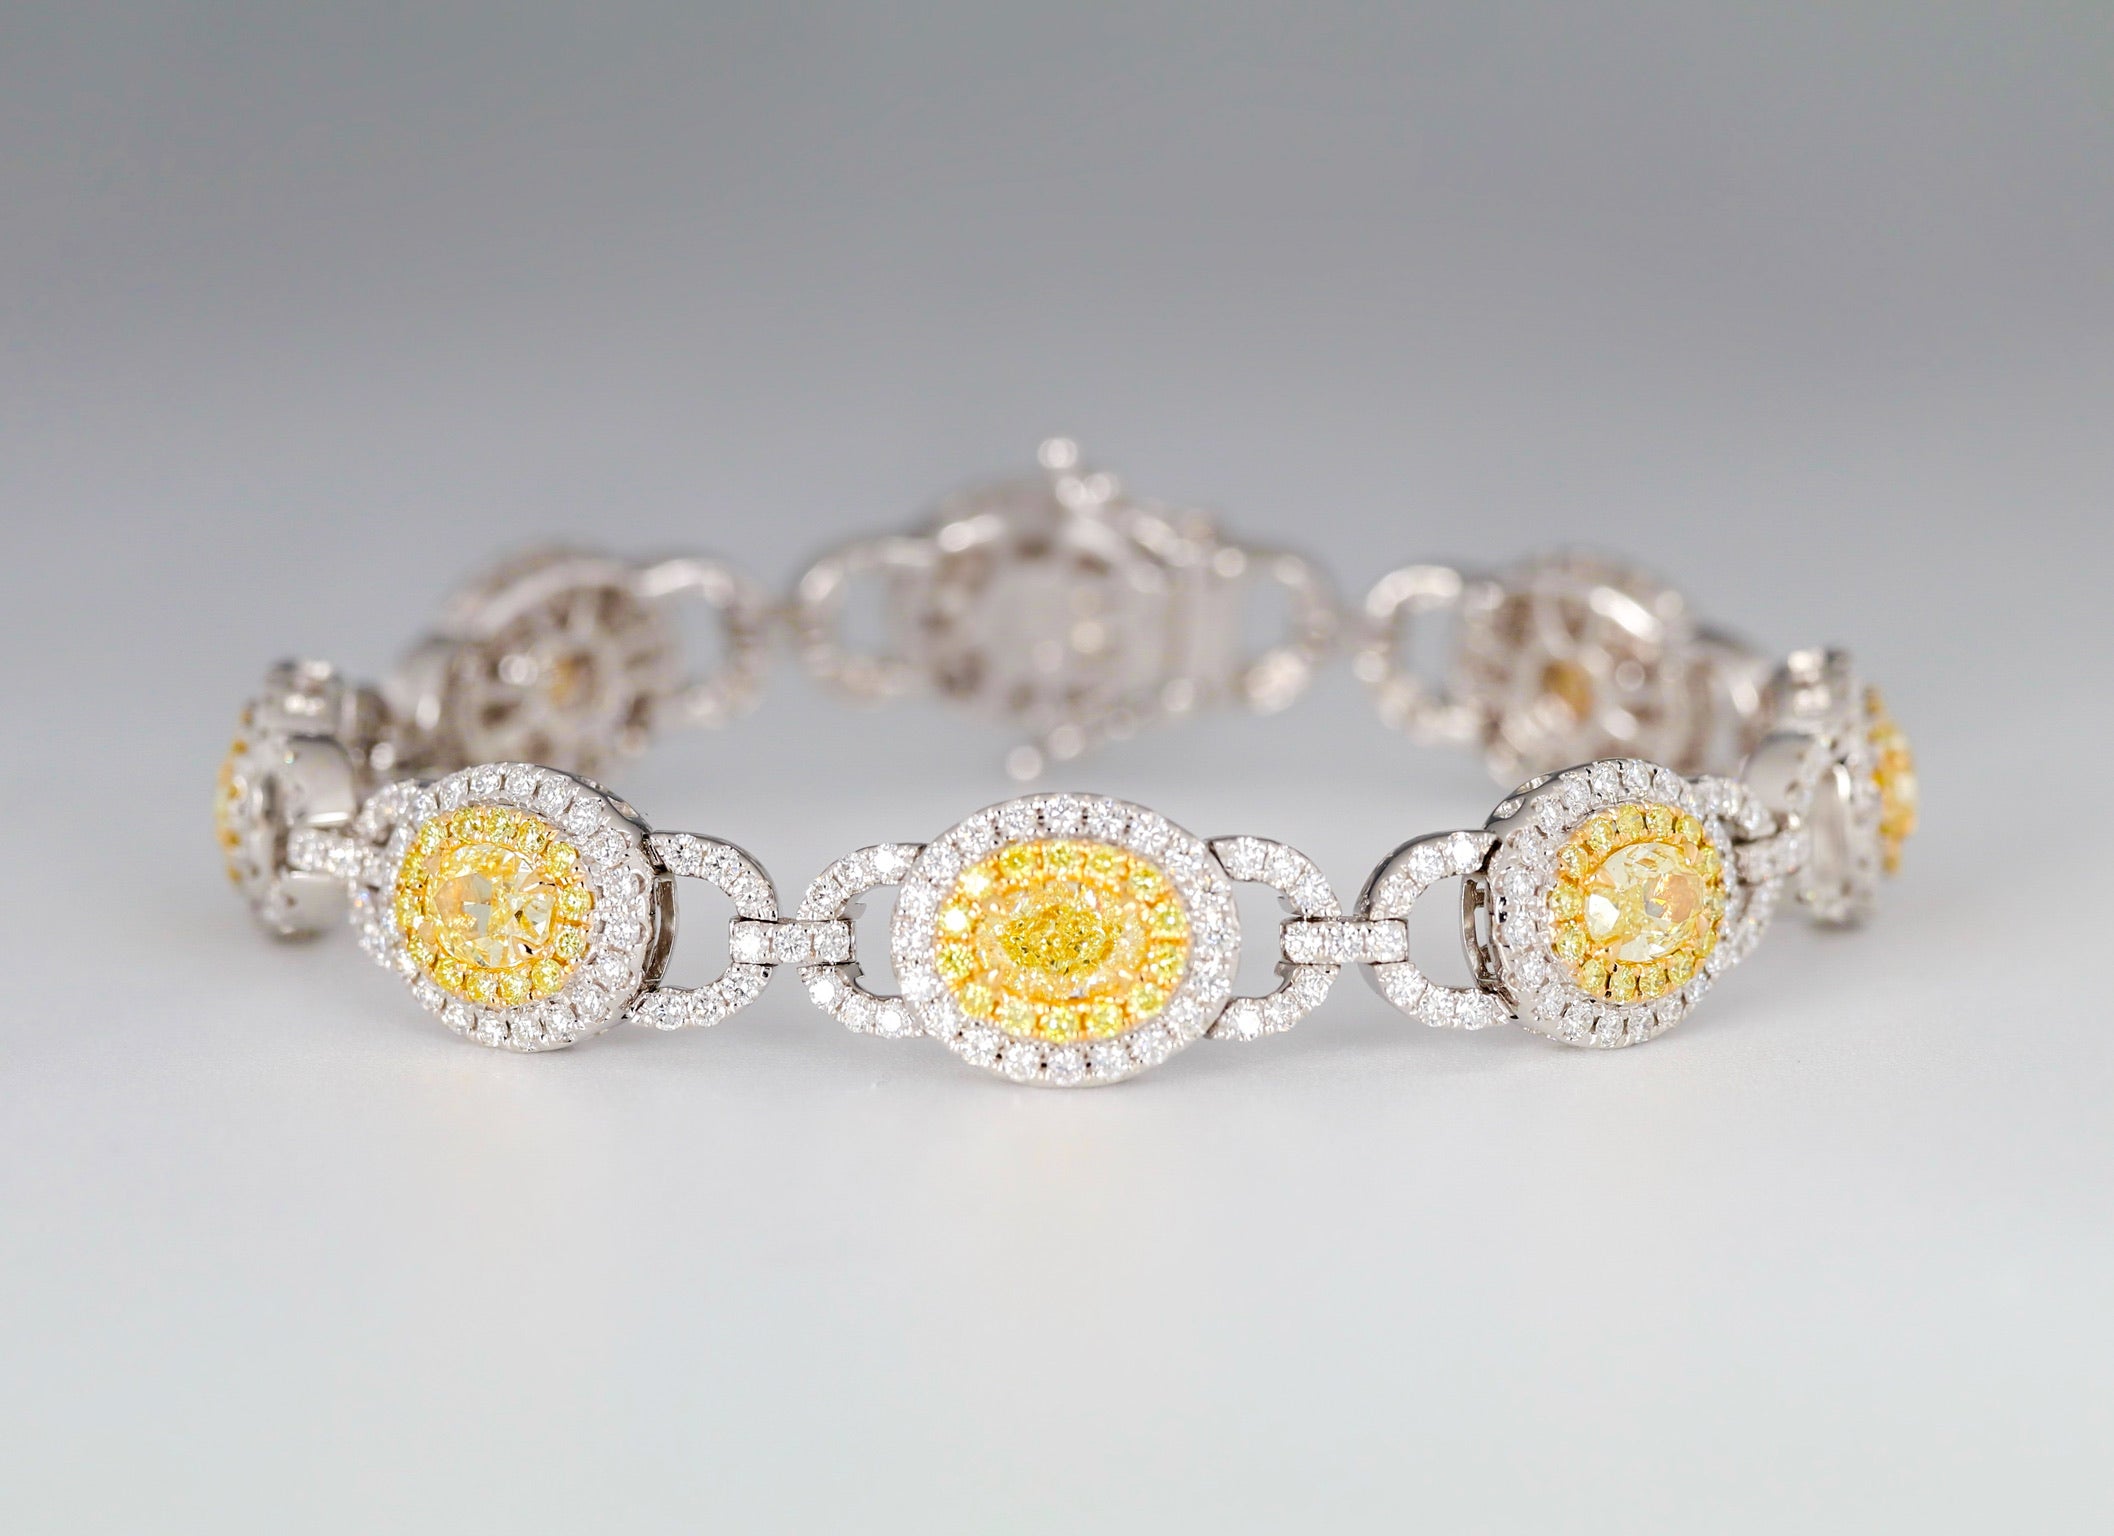 Armband mit 10,89 Karat gelben und weißen Diamanten im Ovalschliff, gefasst in 18 Karat Weißgold.